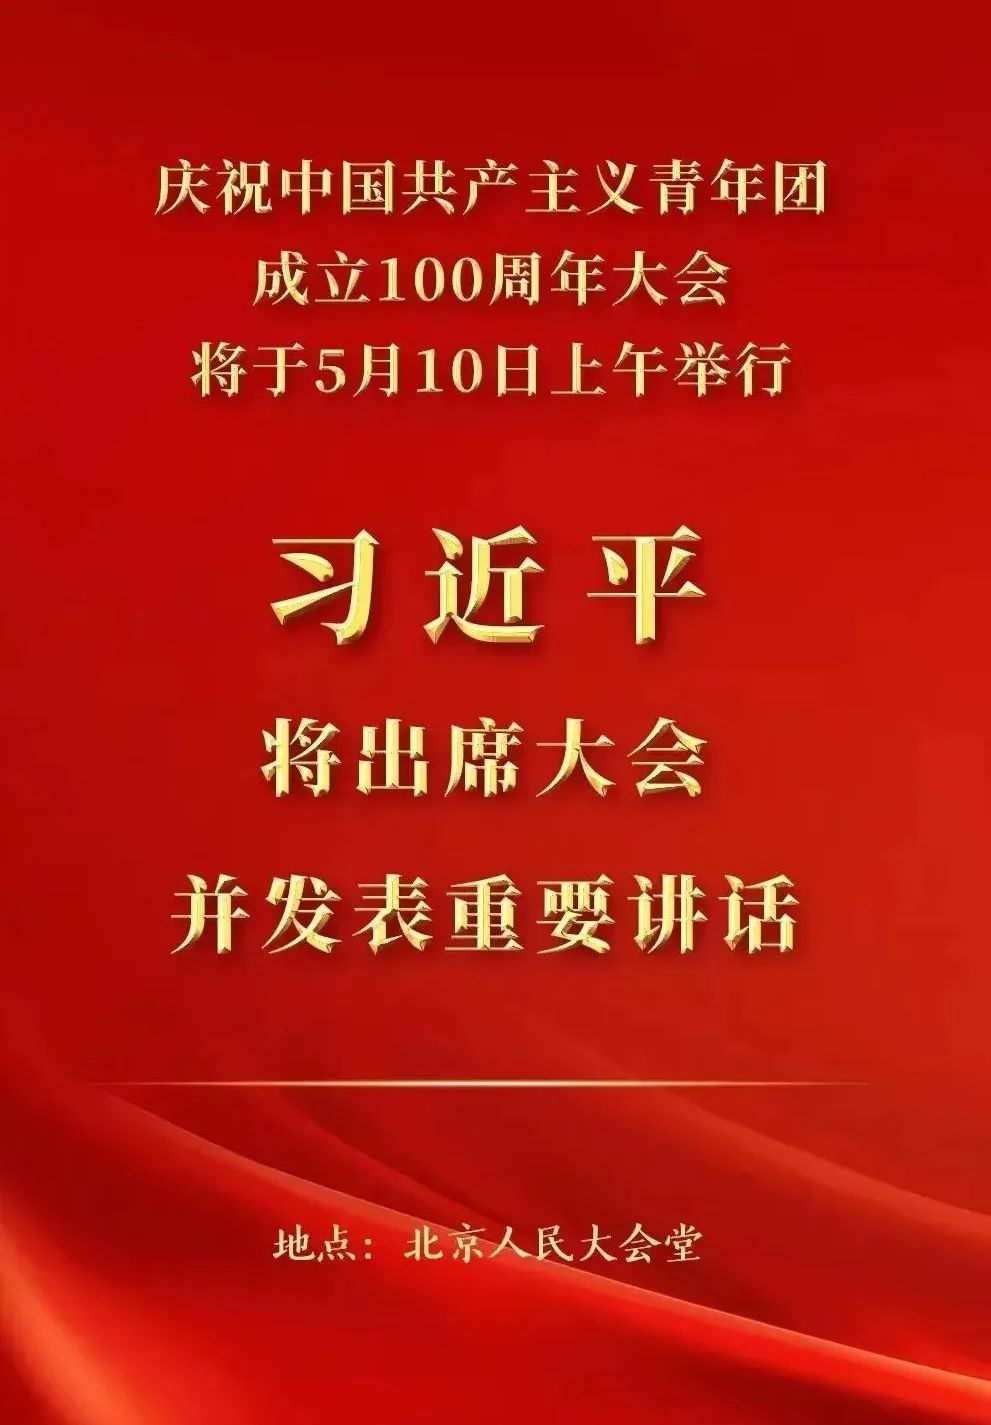 【团徽闪耀百年时】明家装饰组织观看庆祝中国共产主义青年团成立100周年大会